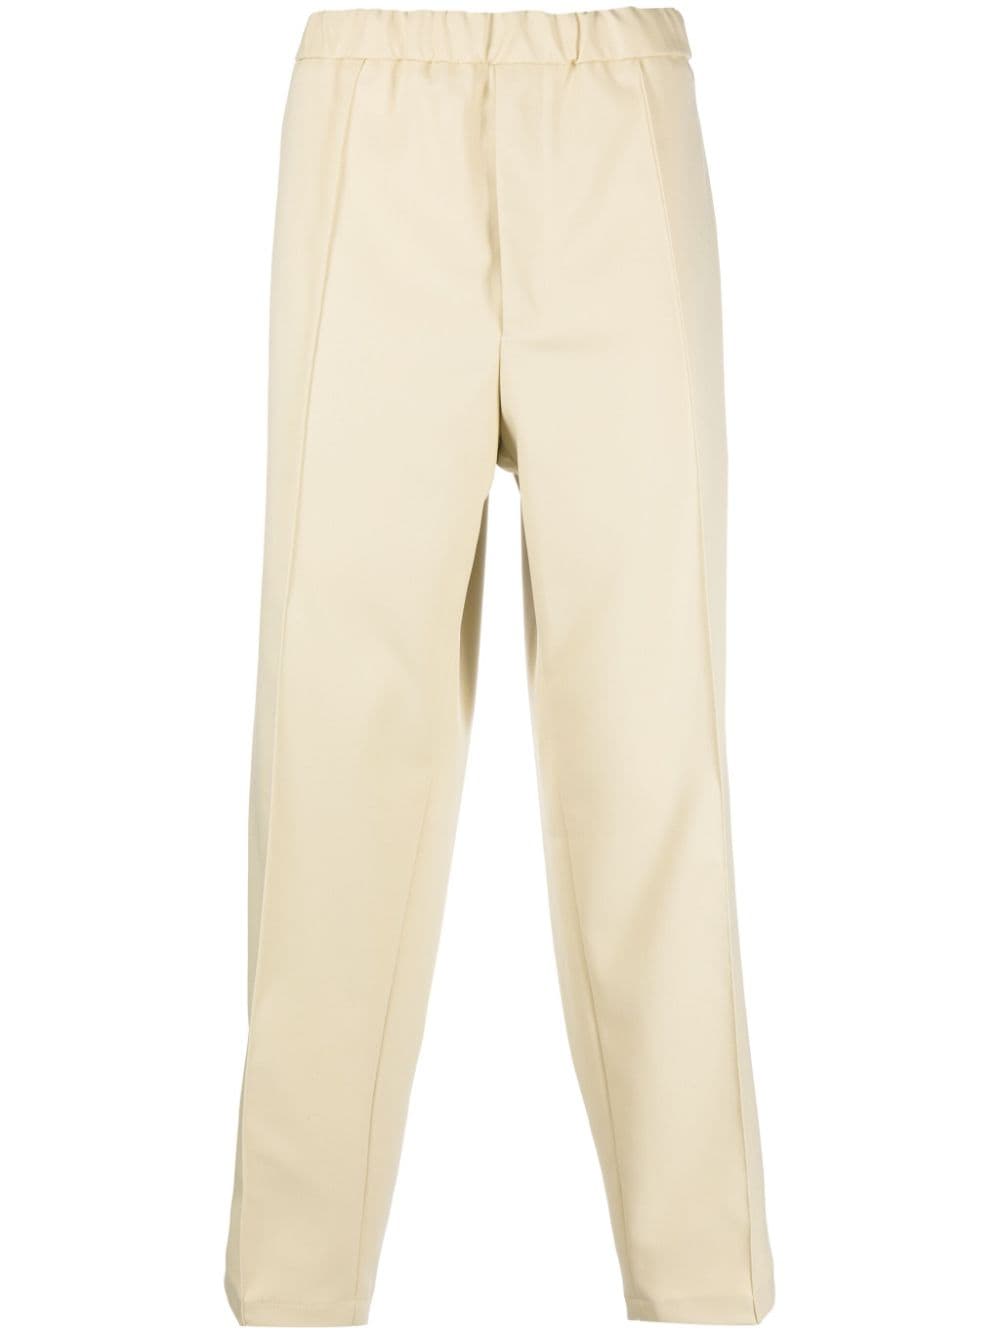 pantalone beige con elastico in vita